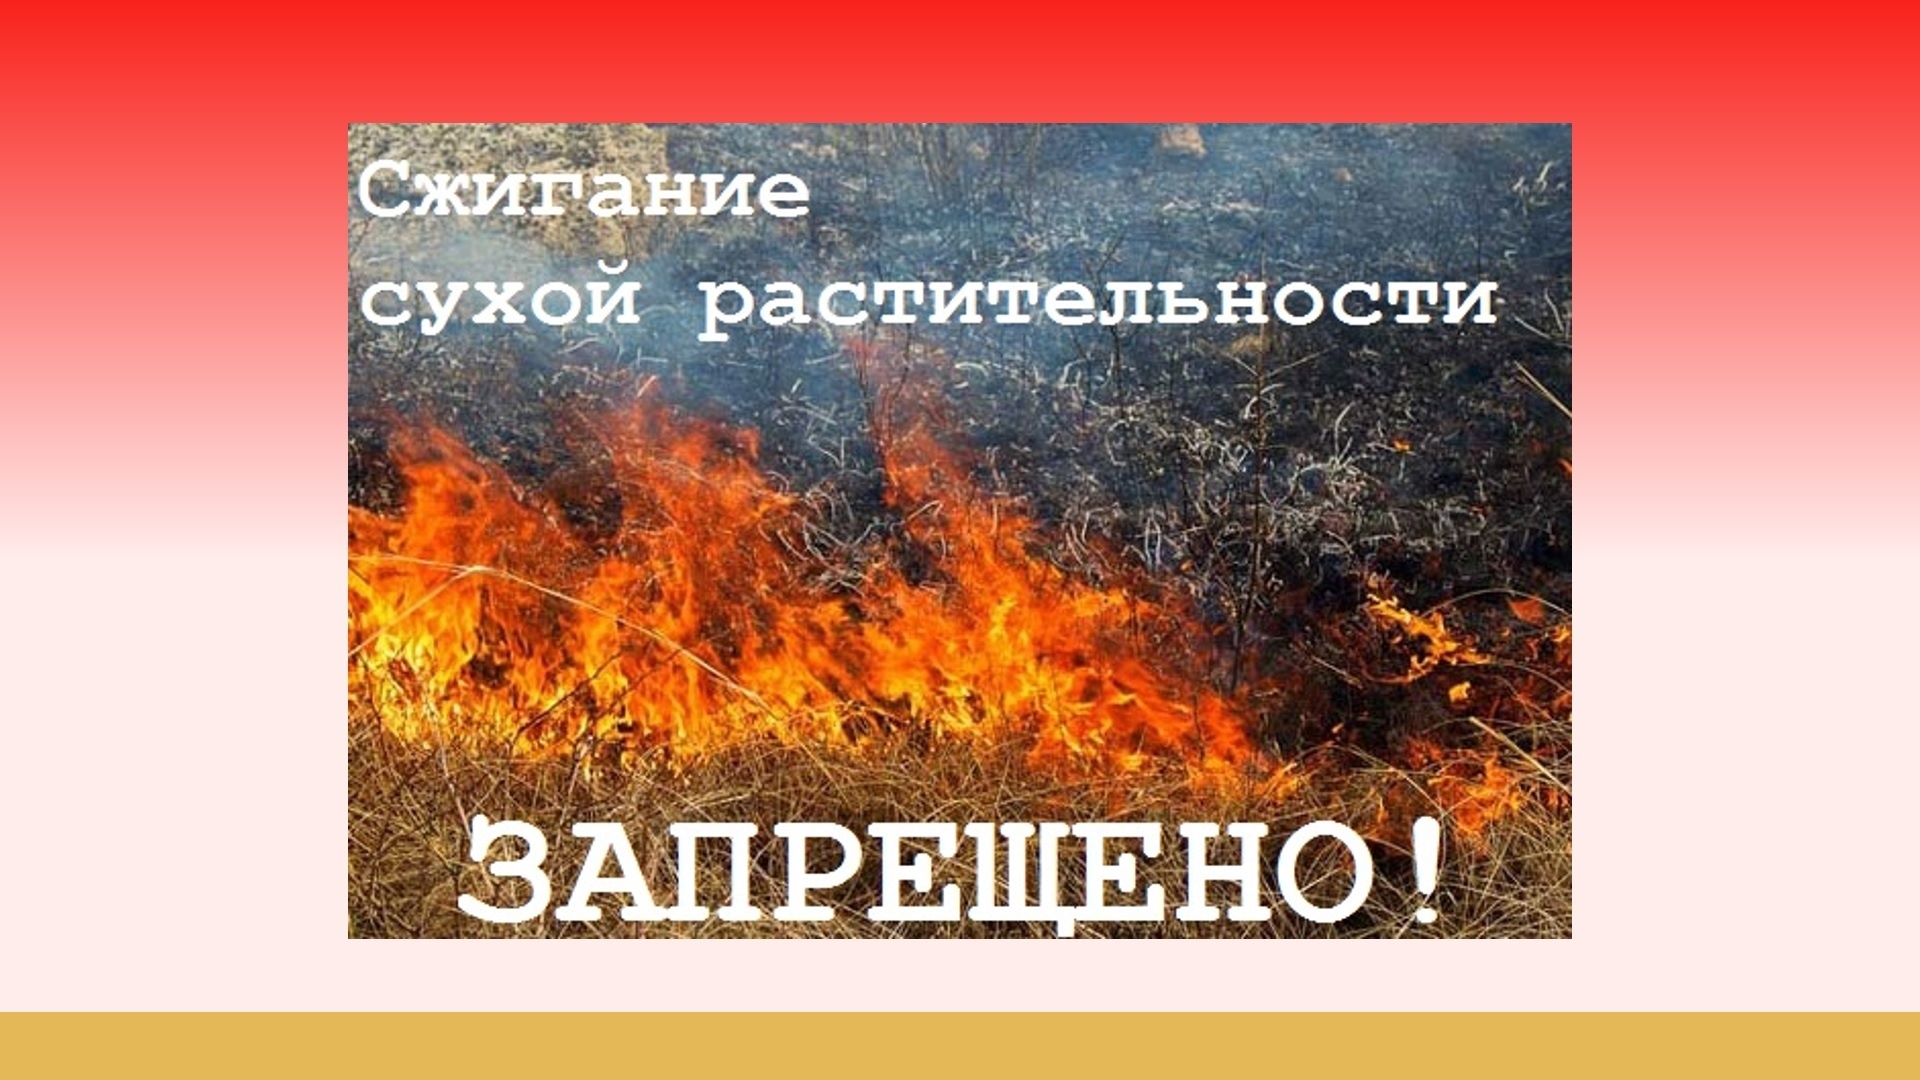 Сжигание сухостоя запрещено!.